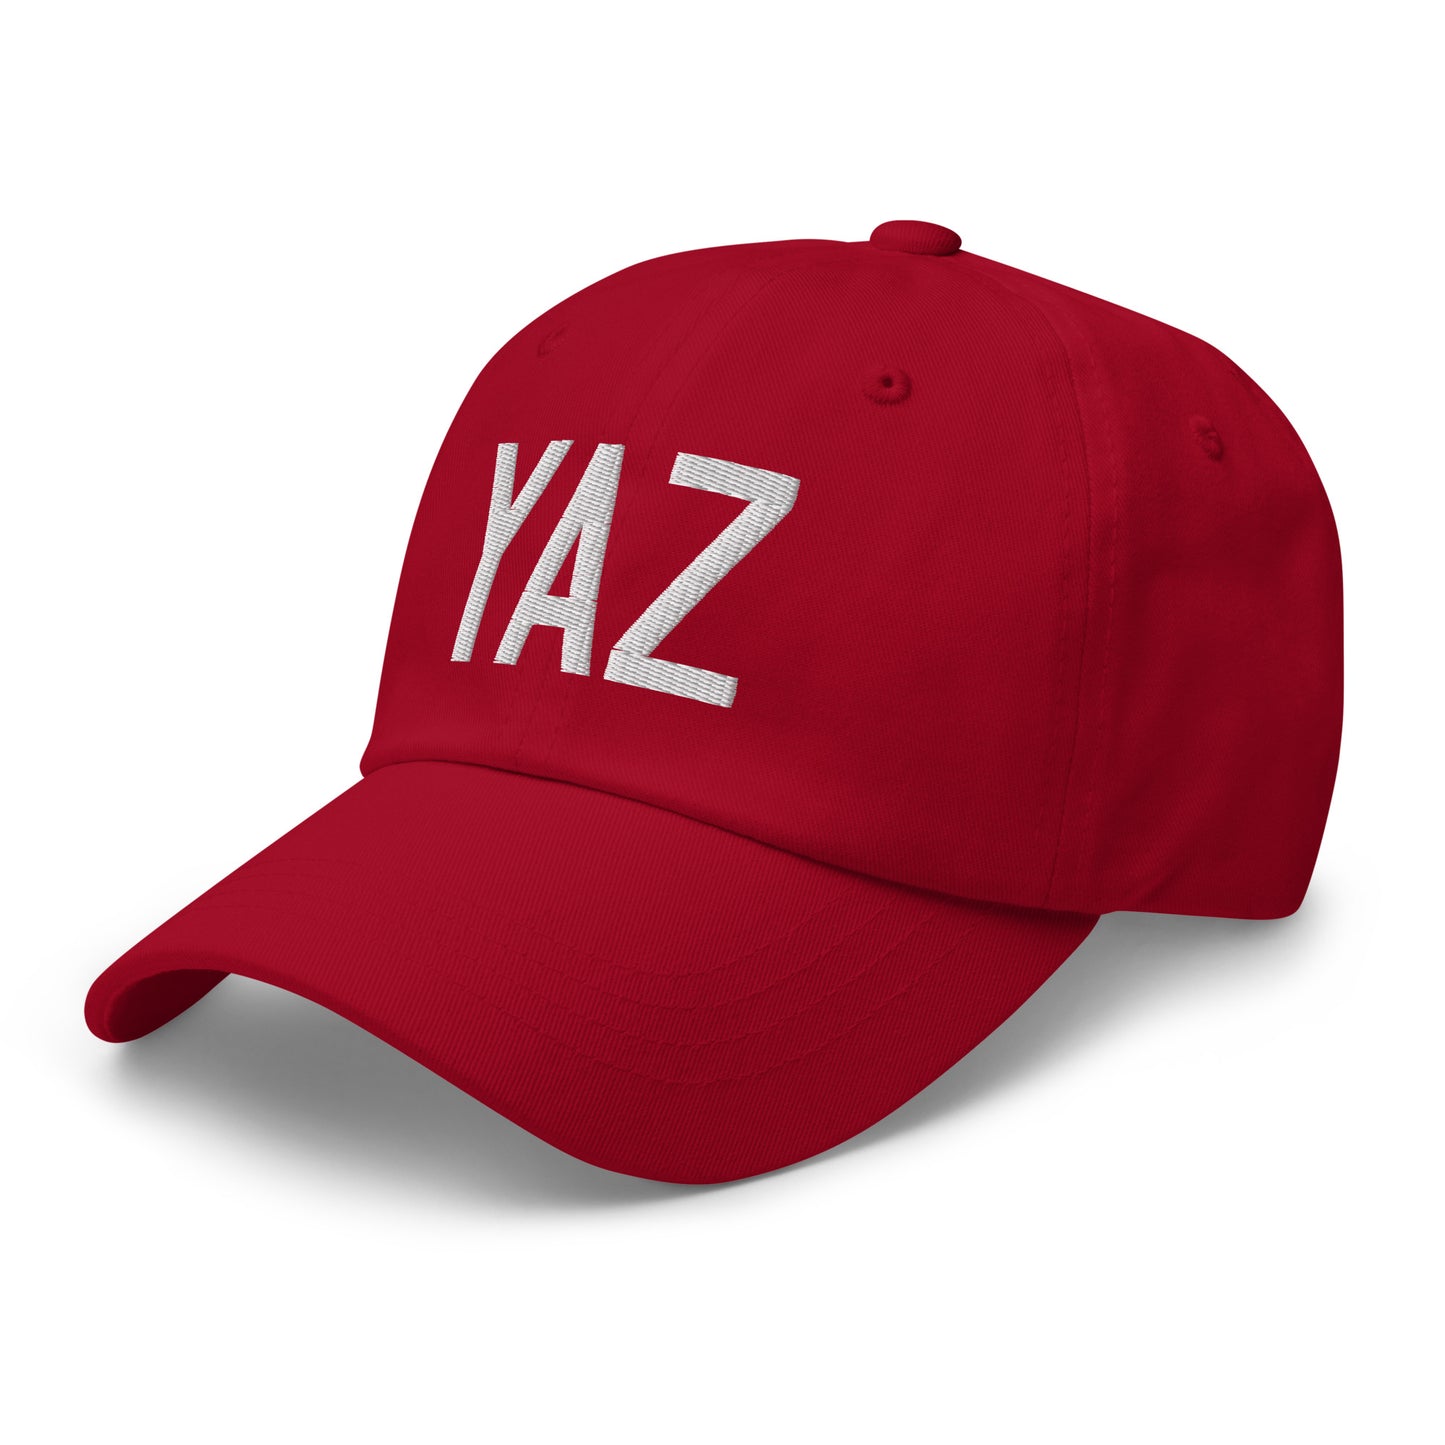 Airport Code Baseball Cap - White • YAZ Tofino • YHM Designs - Image 21